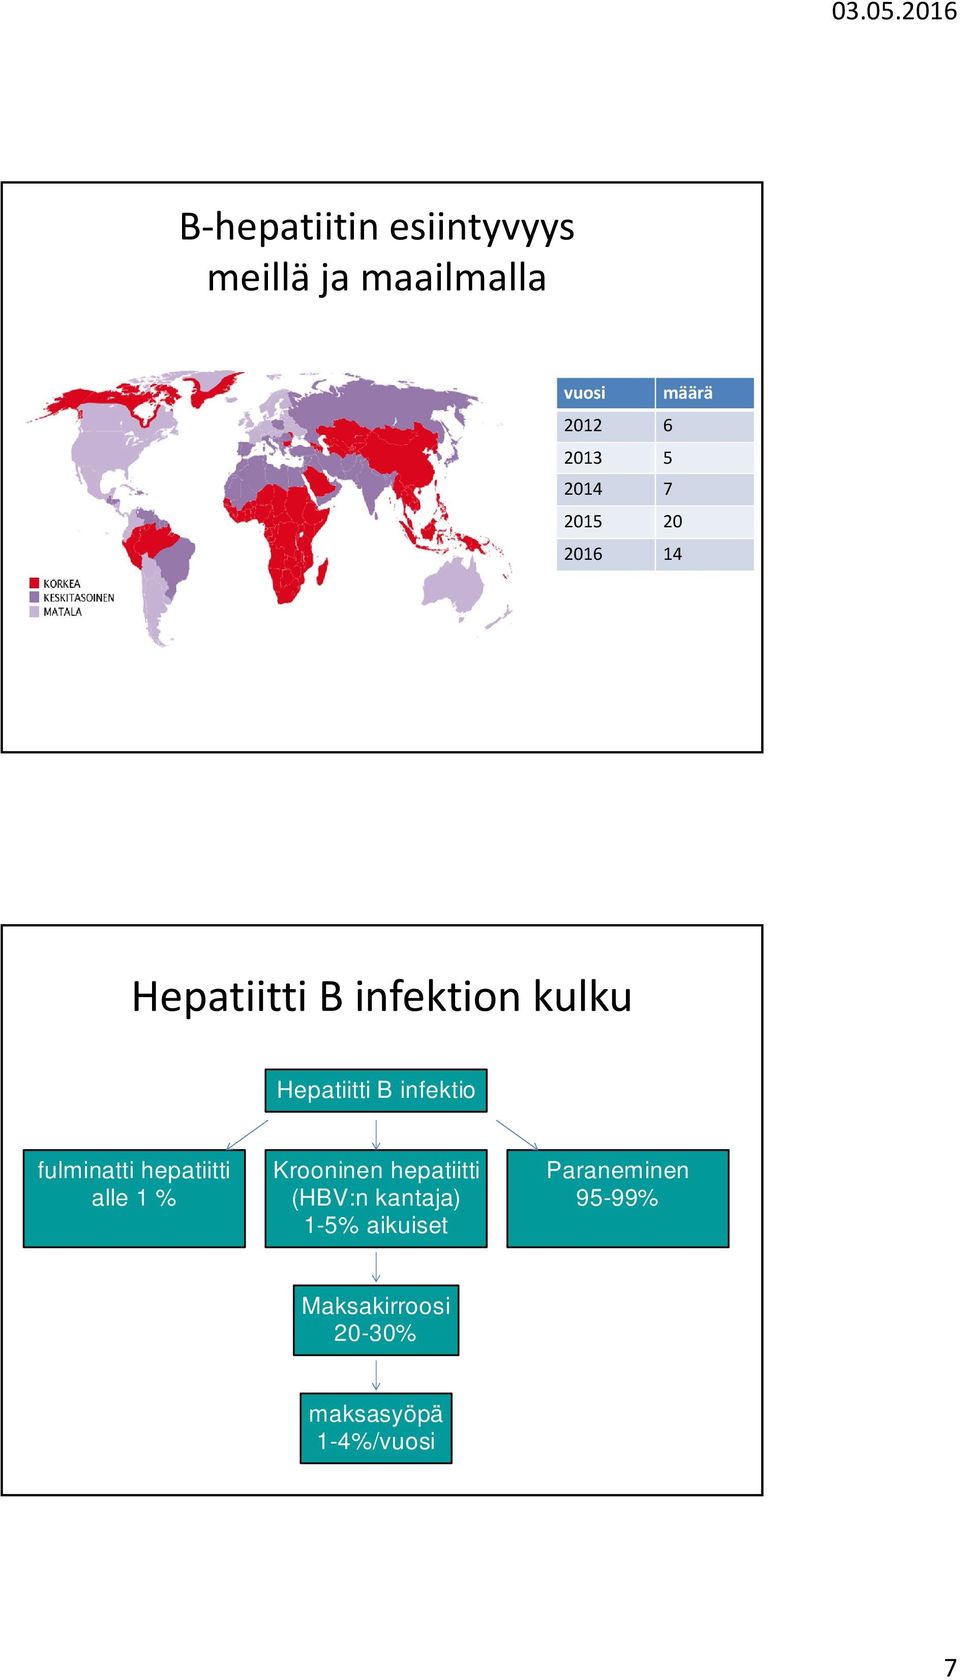 infektio fulminatti hepatiitti alle 1 % Krooninen hepatiitti (HBV:n